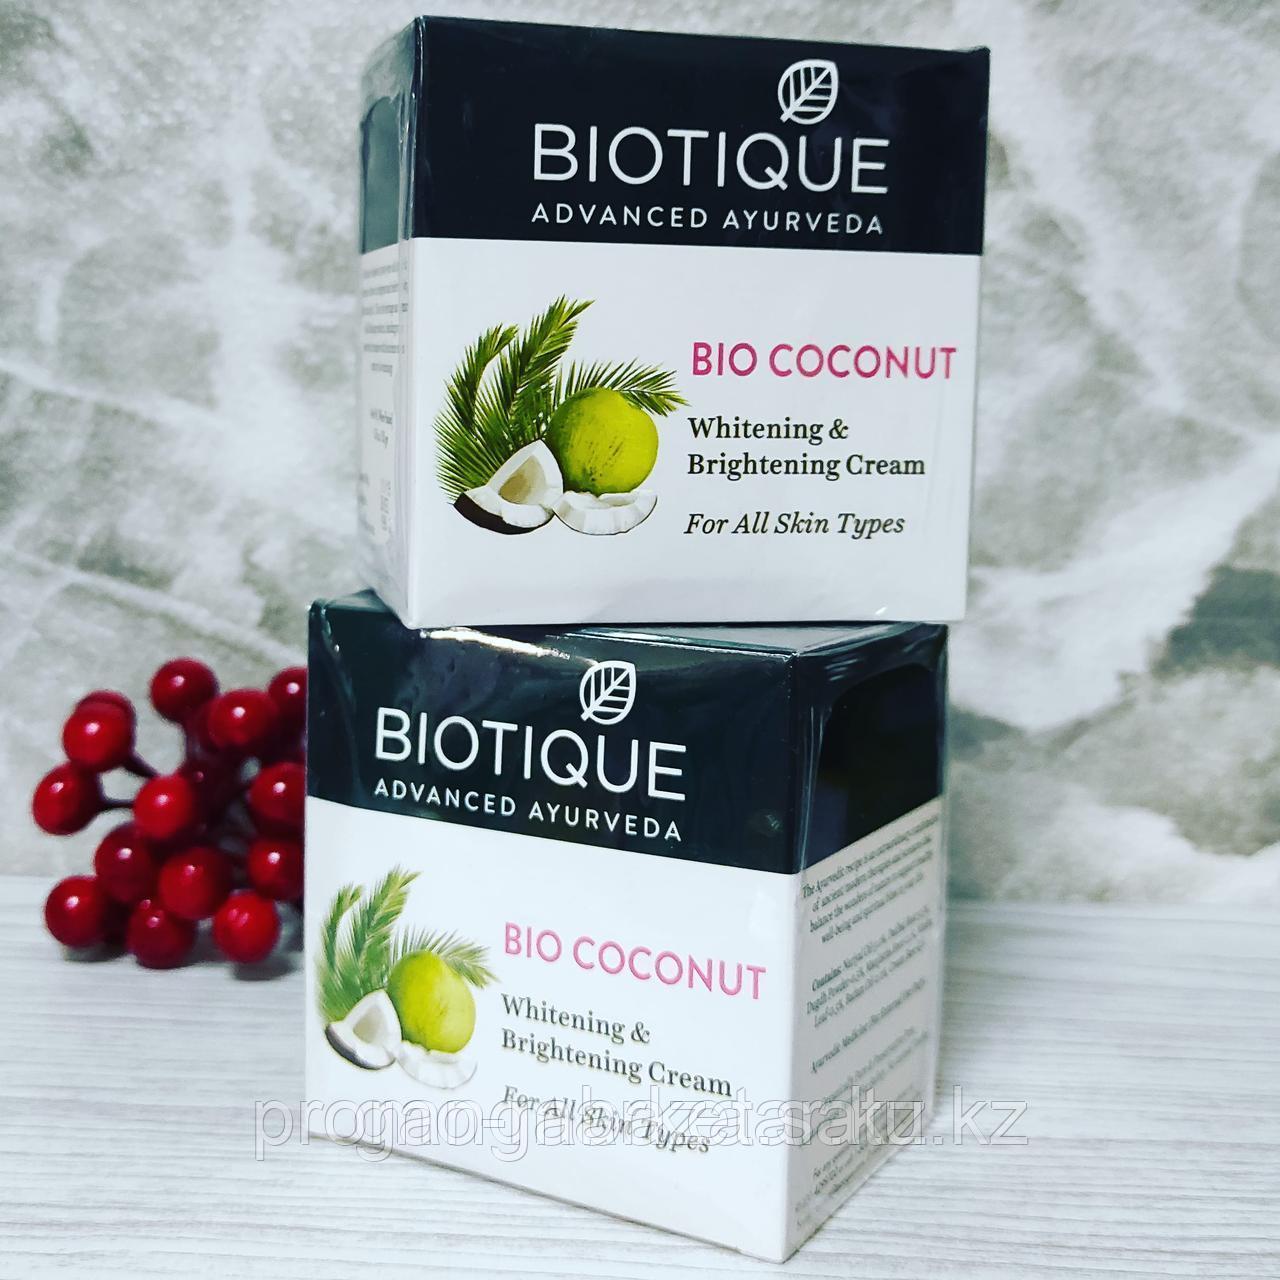 Биотик Био Кокос Biotique Bio Coconut - отбеливающий крем для лица из натуральных ингредиентов Подробнее: http